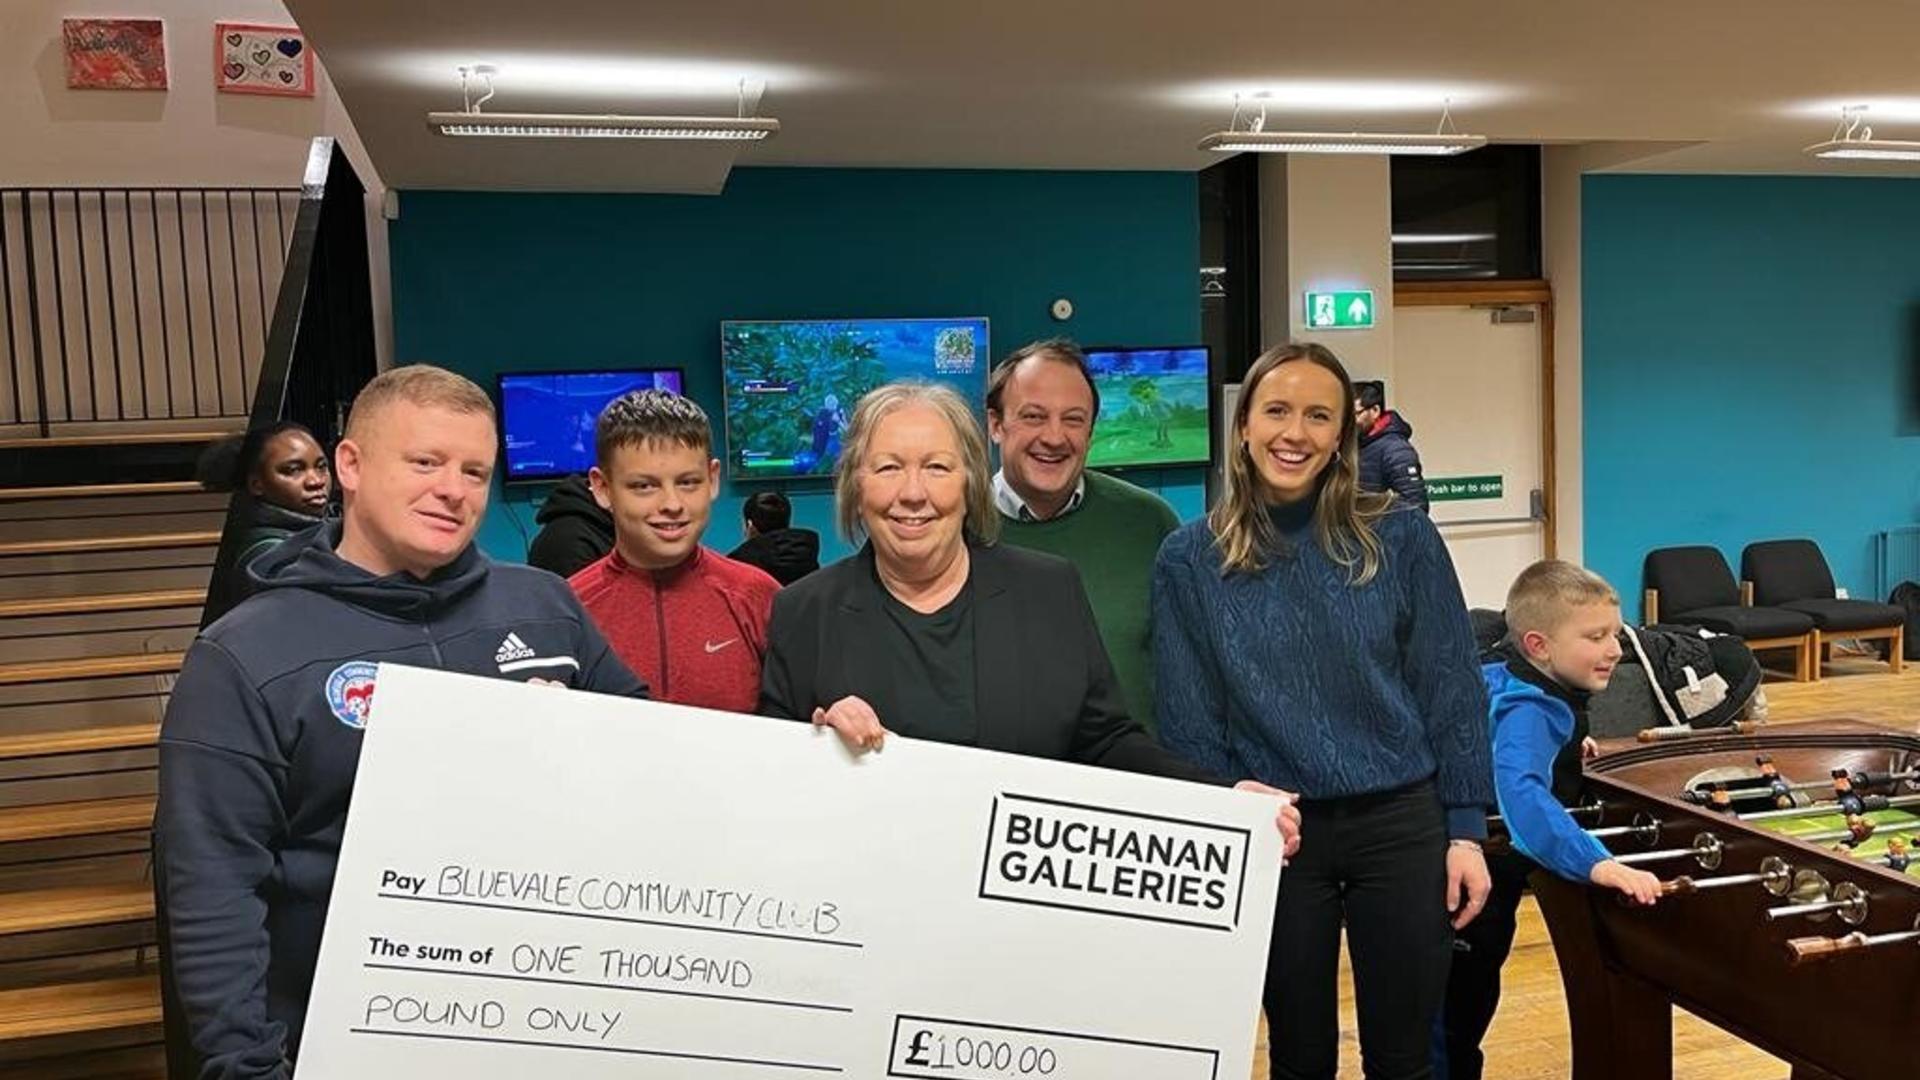 Landsec team holds community grant for buchanan galleries 